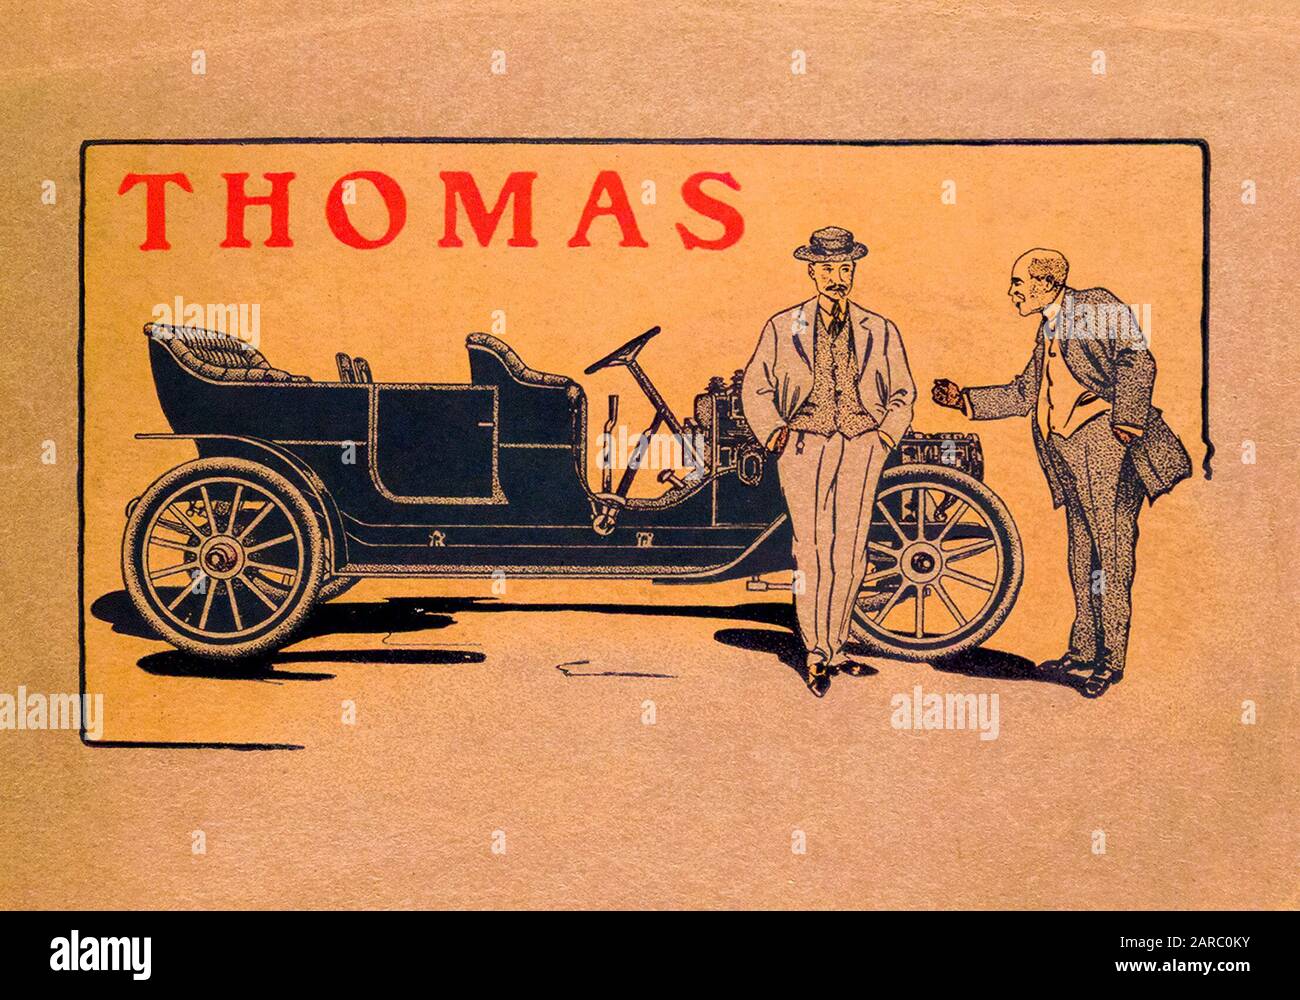 Thomas Motor Company, trade catalogue, cover illustration 1900s, circa 1909 Stock Photo